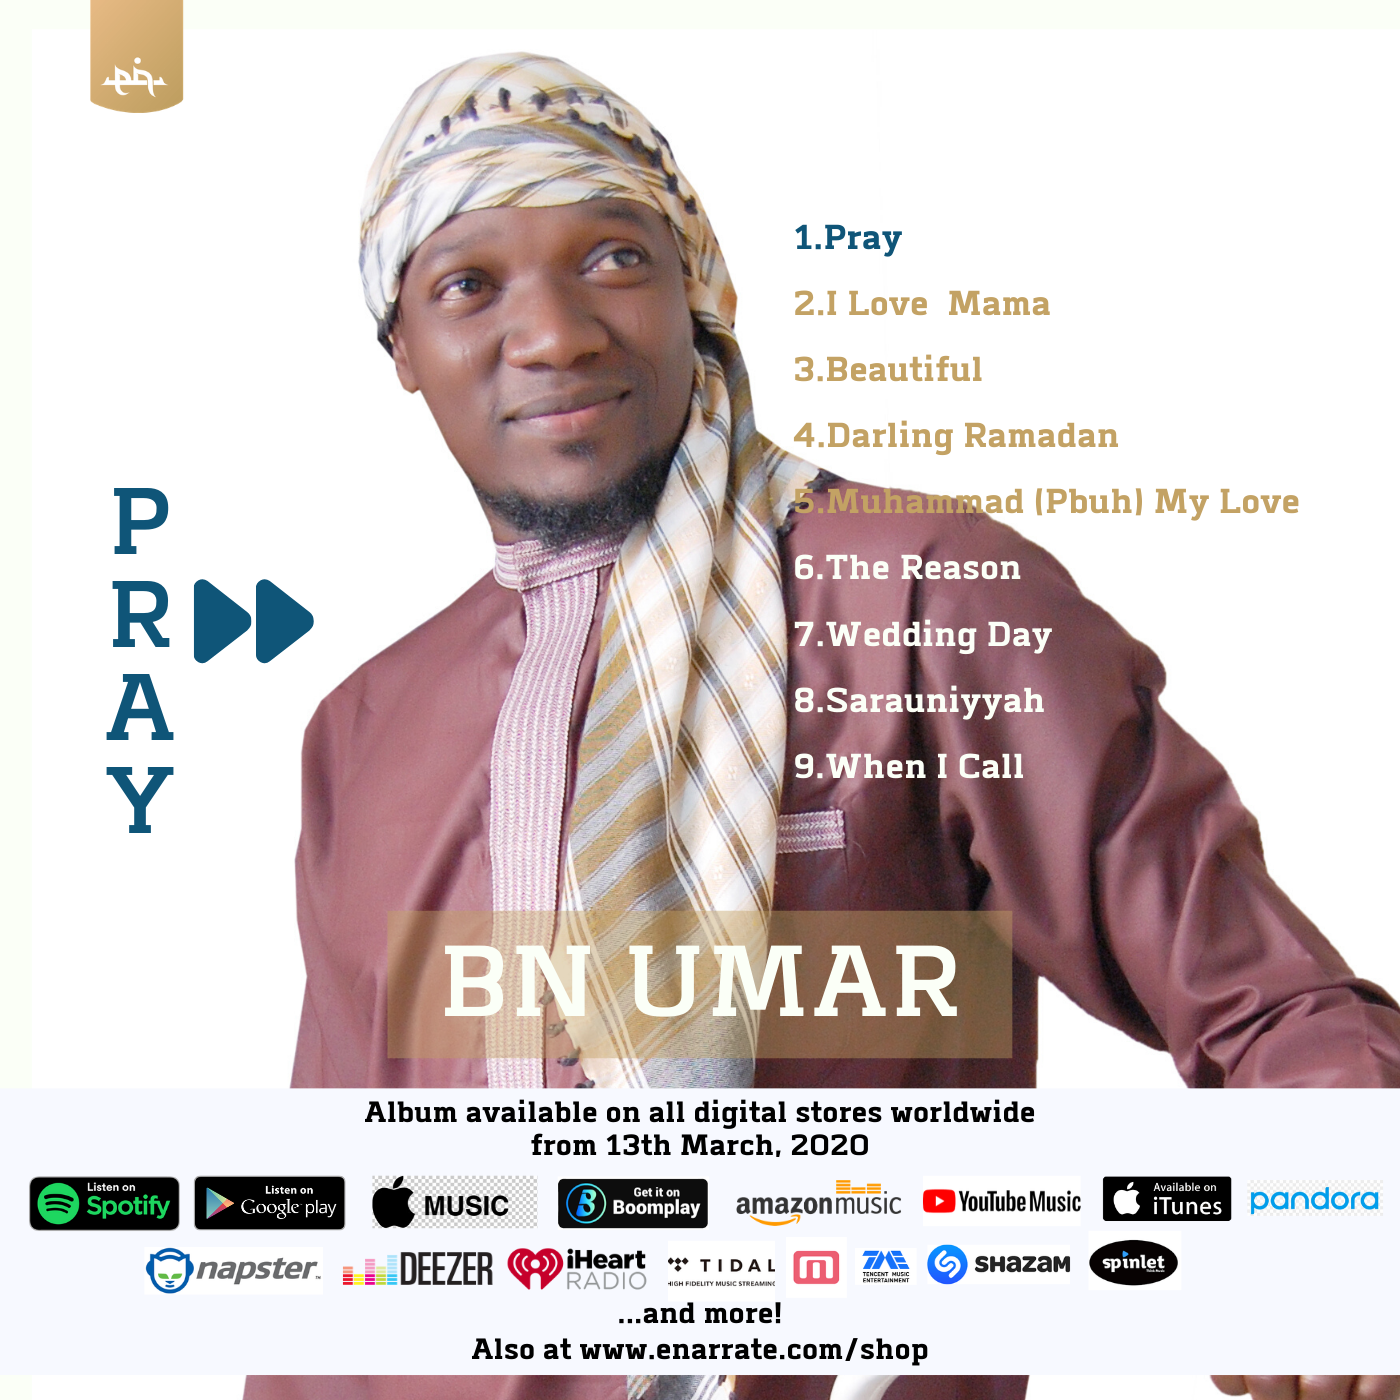 Pray – Umar Campaign